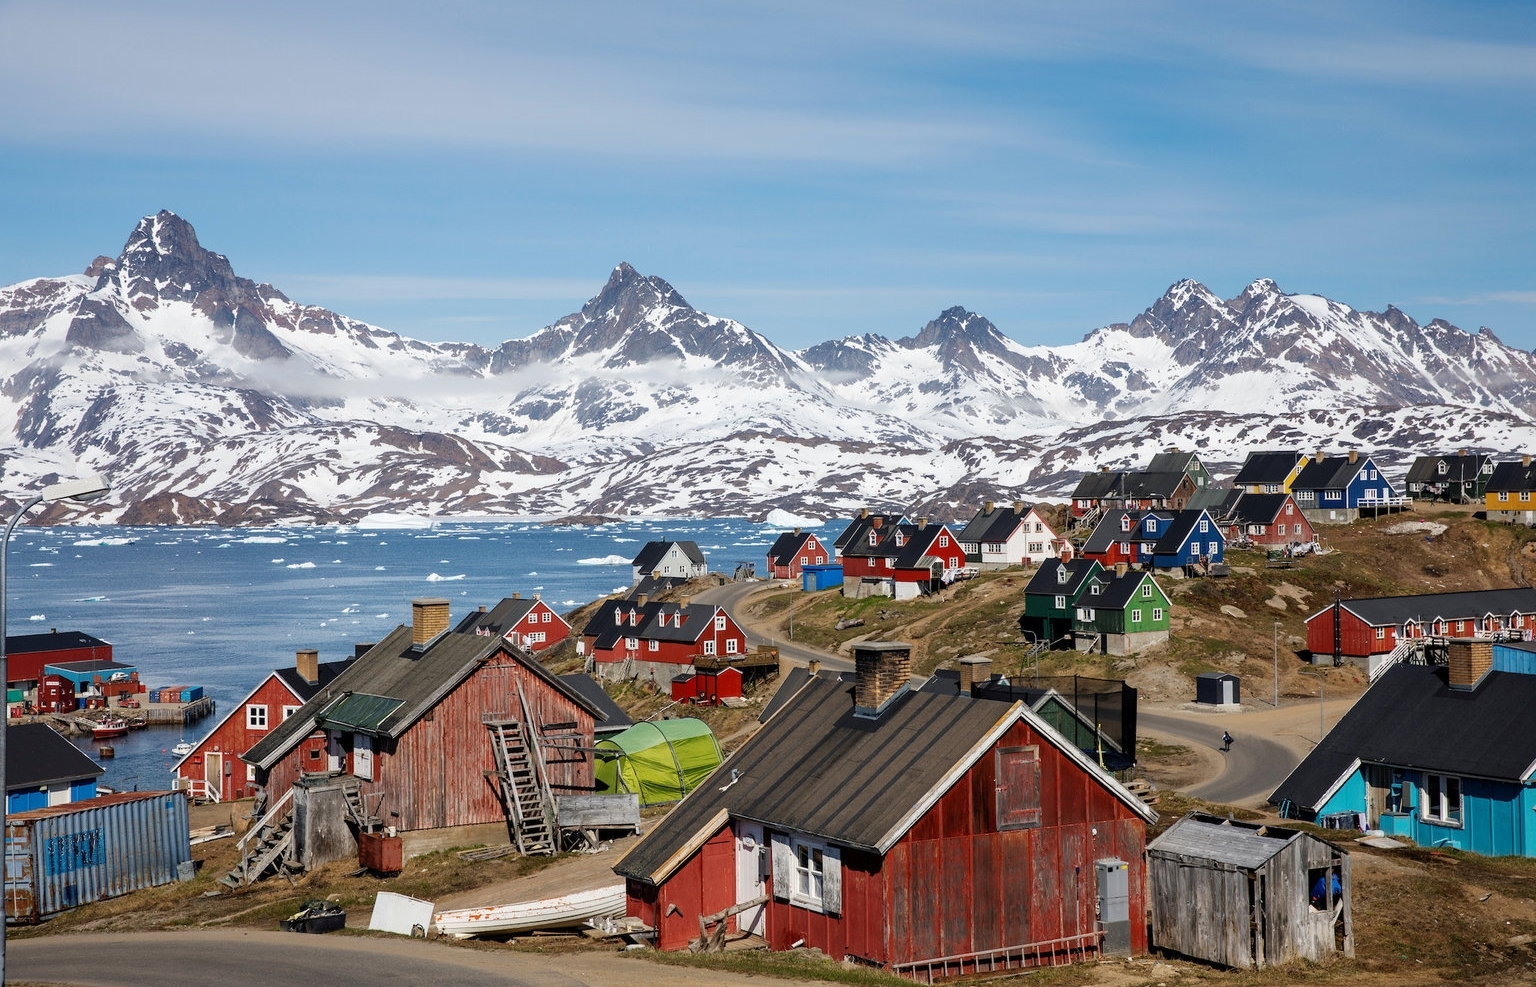 Greenland - hòn đảo lớn nhất thế giới mà ông Trump muốn mua lại có gì đặc biệt?